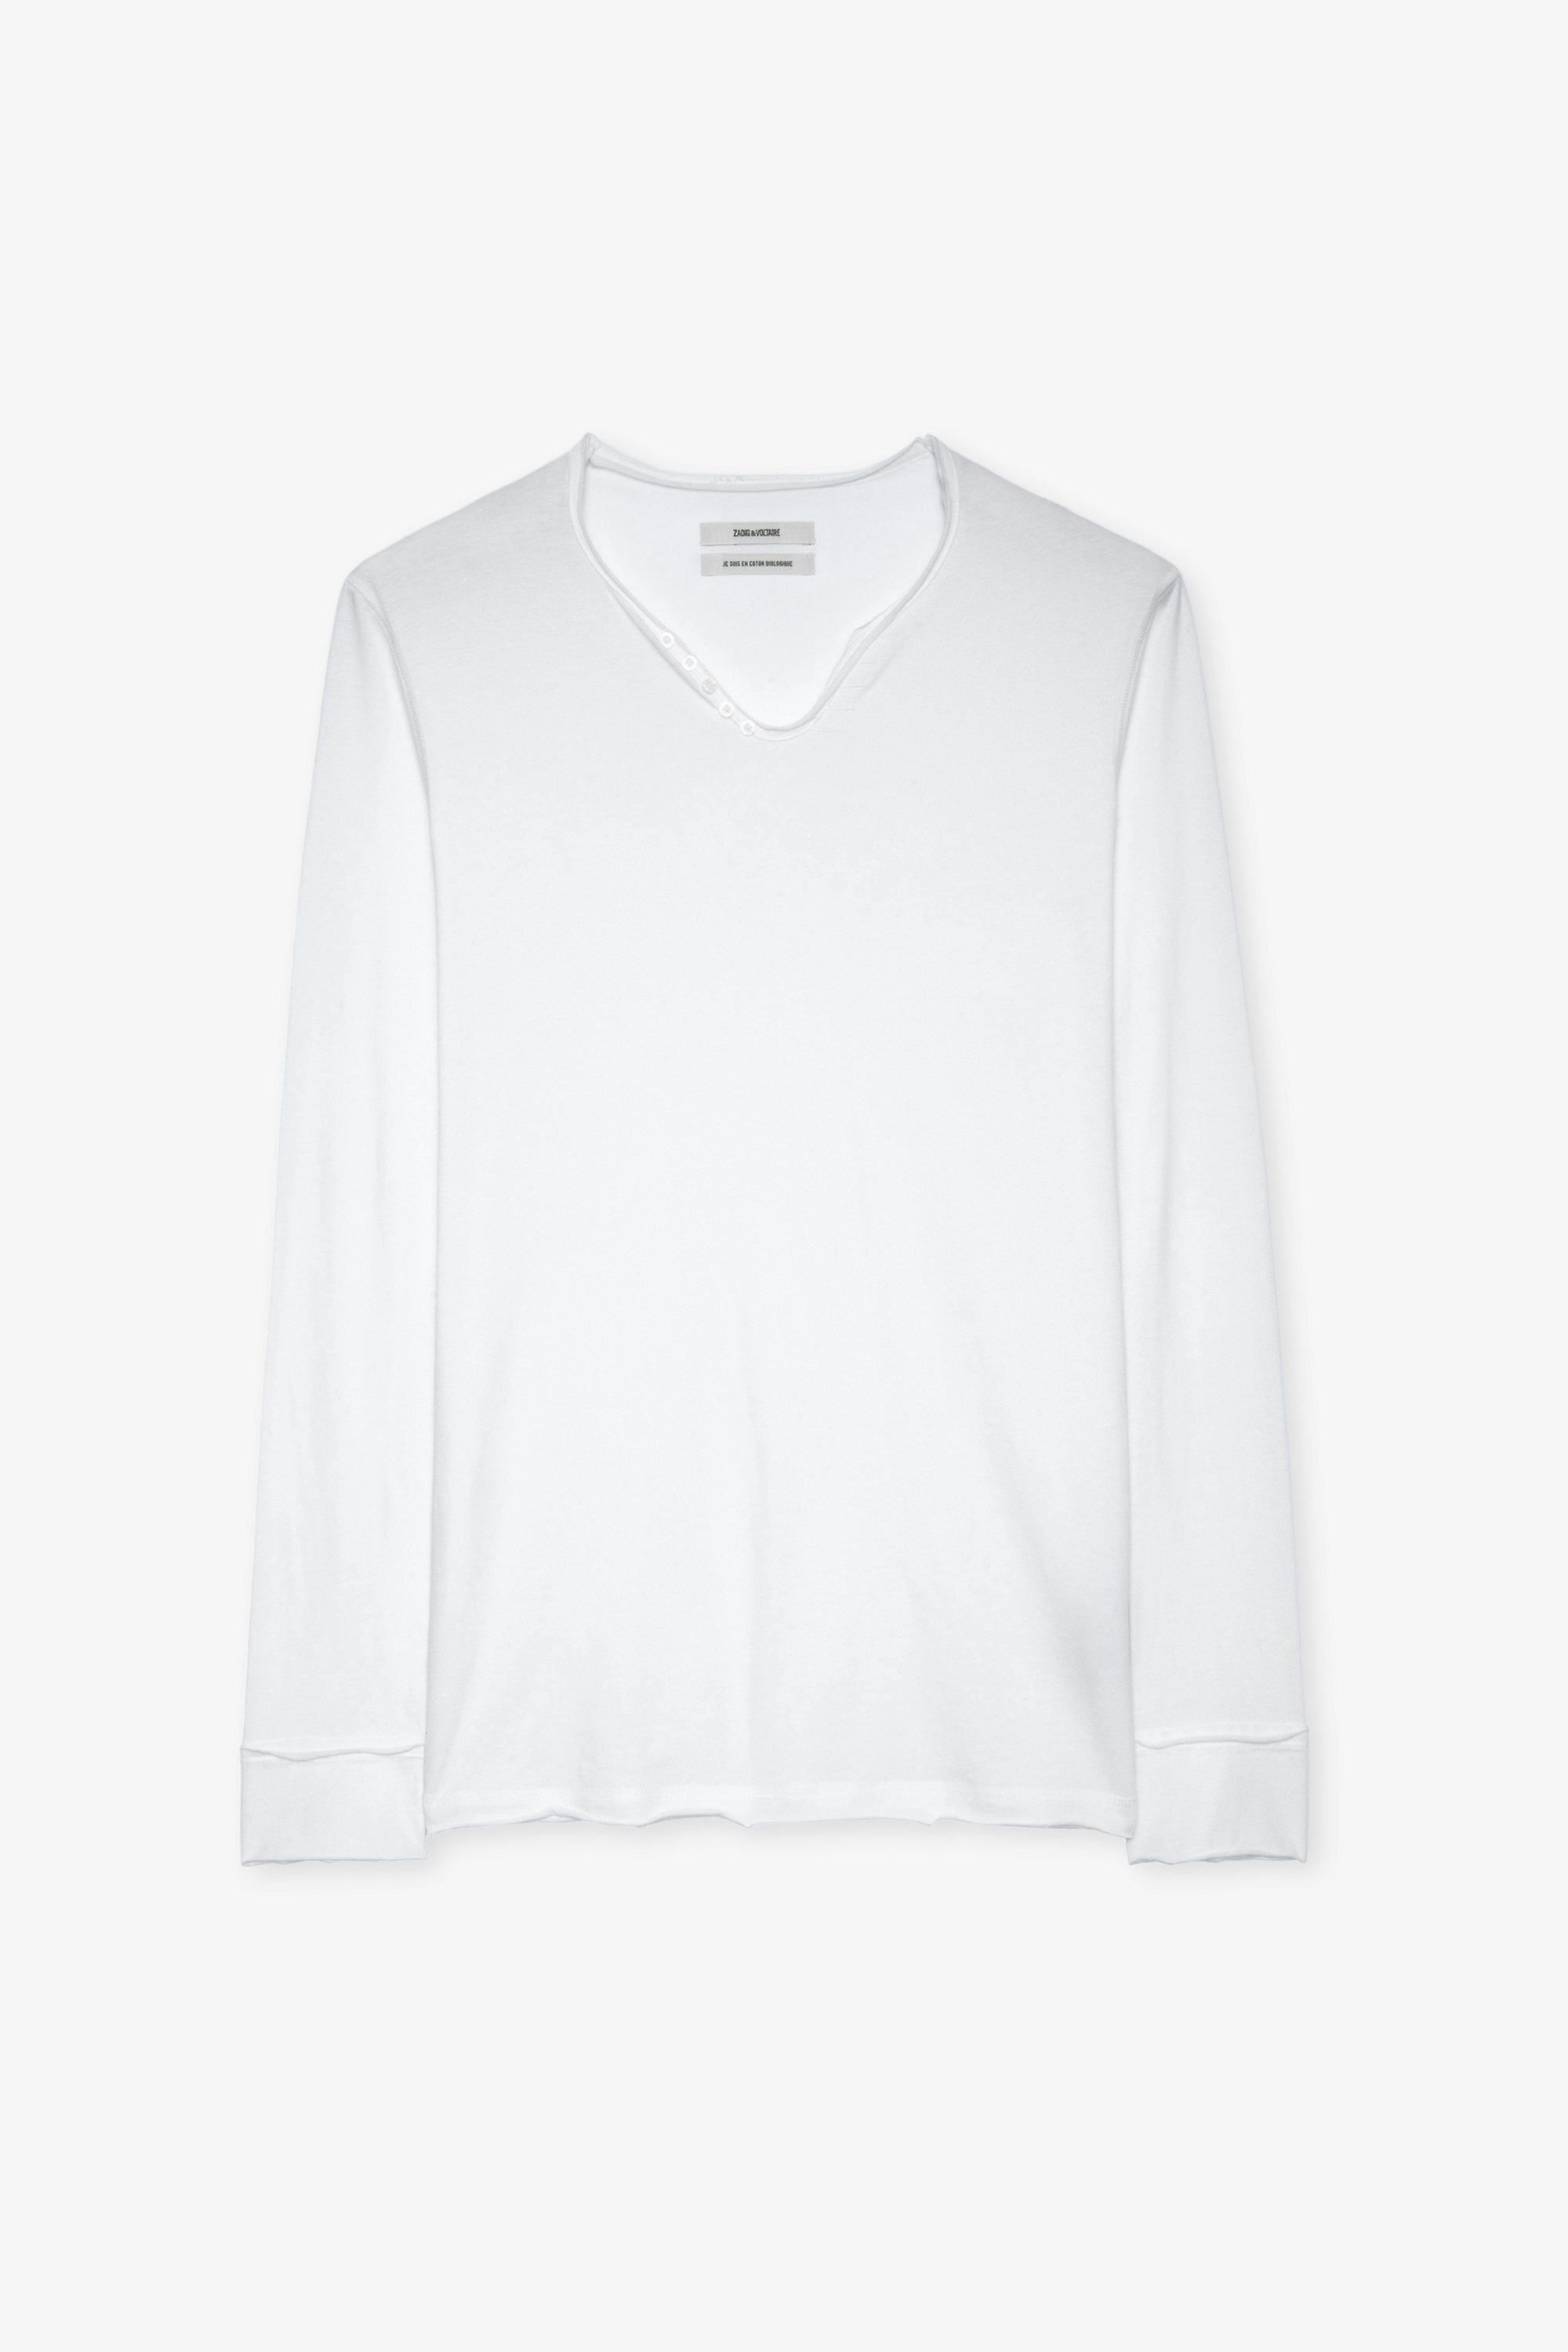 T-shirt Serafino Monastir - T-shirt bianca in cotone con collo a serafino